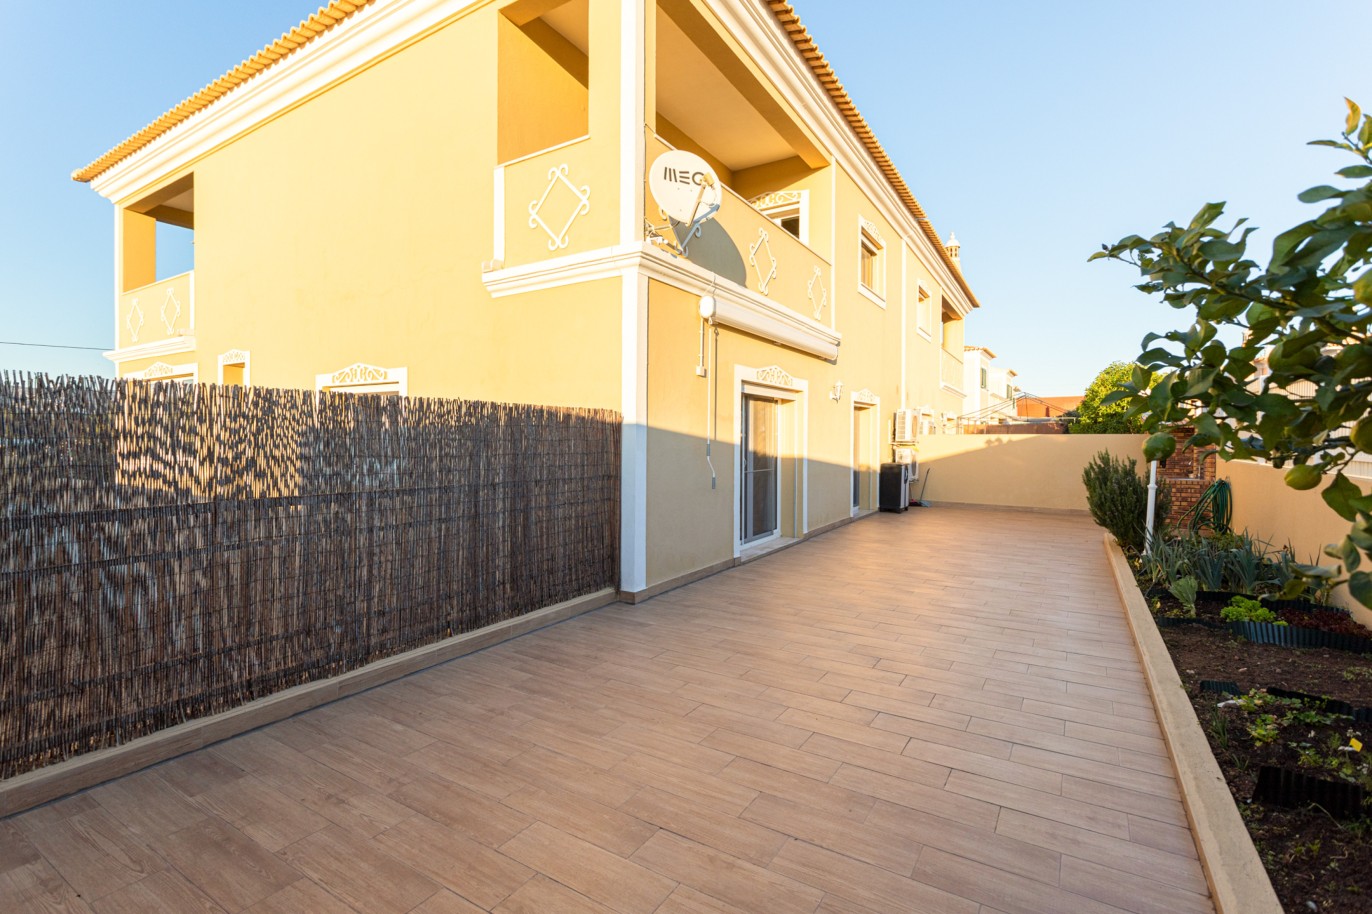 Villa de 4 dormitorios en zona de prestigio, en venta en Almancil, Algarve_217672